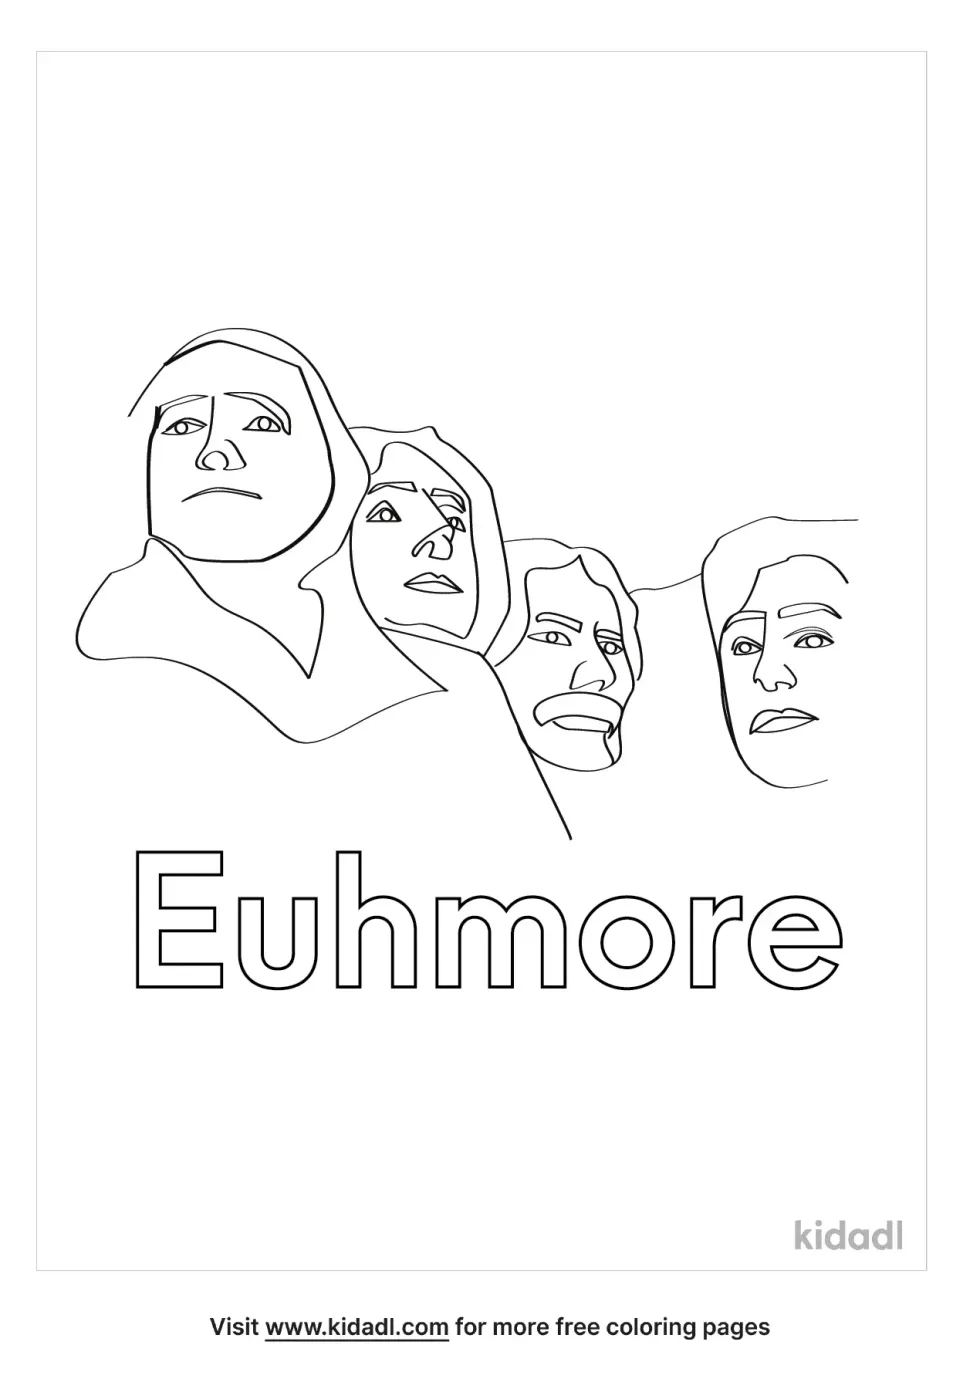 Euhmore